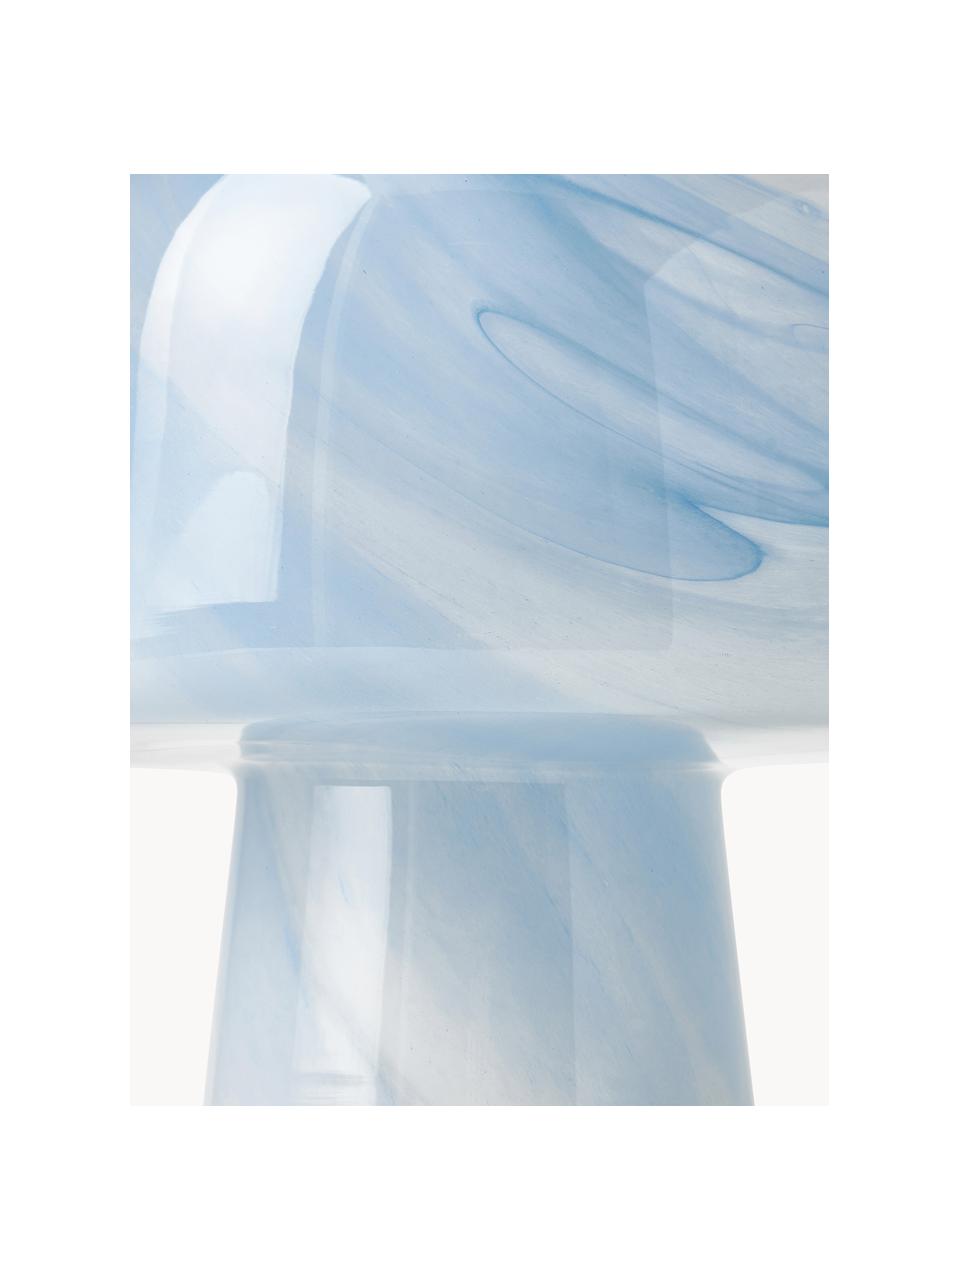 Kleine tafellamp Talia in marmerlook, Lamp: glas, Marmerlook lichtblauw, Ø 20 x H 26 cm